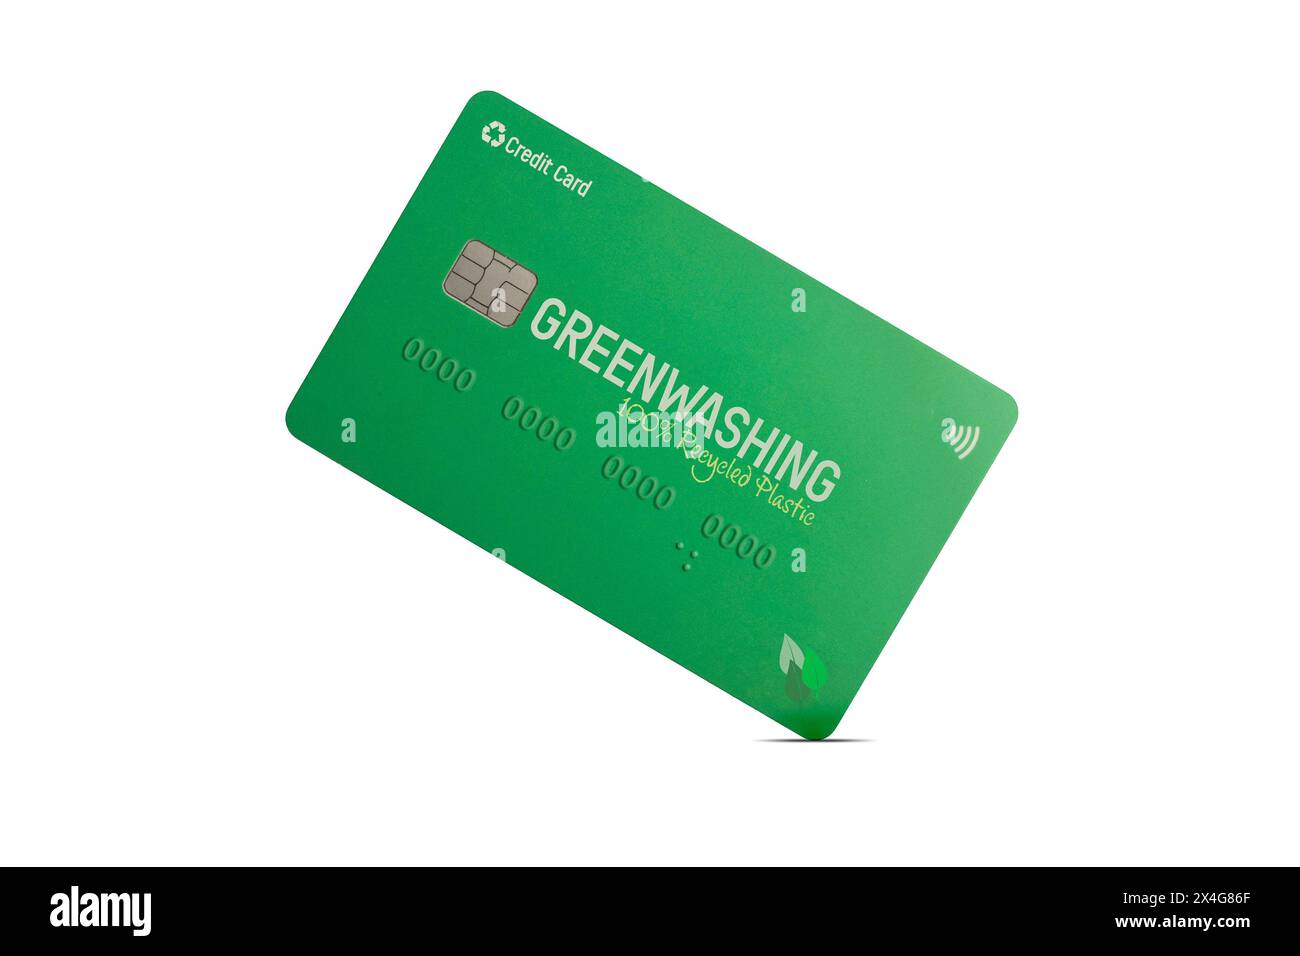 Greenwashing-Konzept: Gefälschte grüne Kreditkarte auf weißem Hintergrund Stockfoto